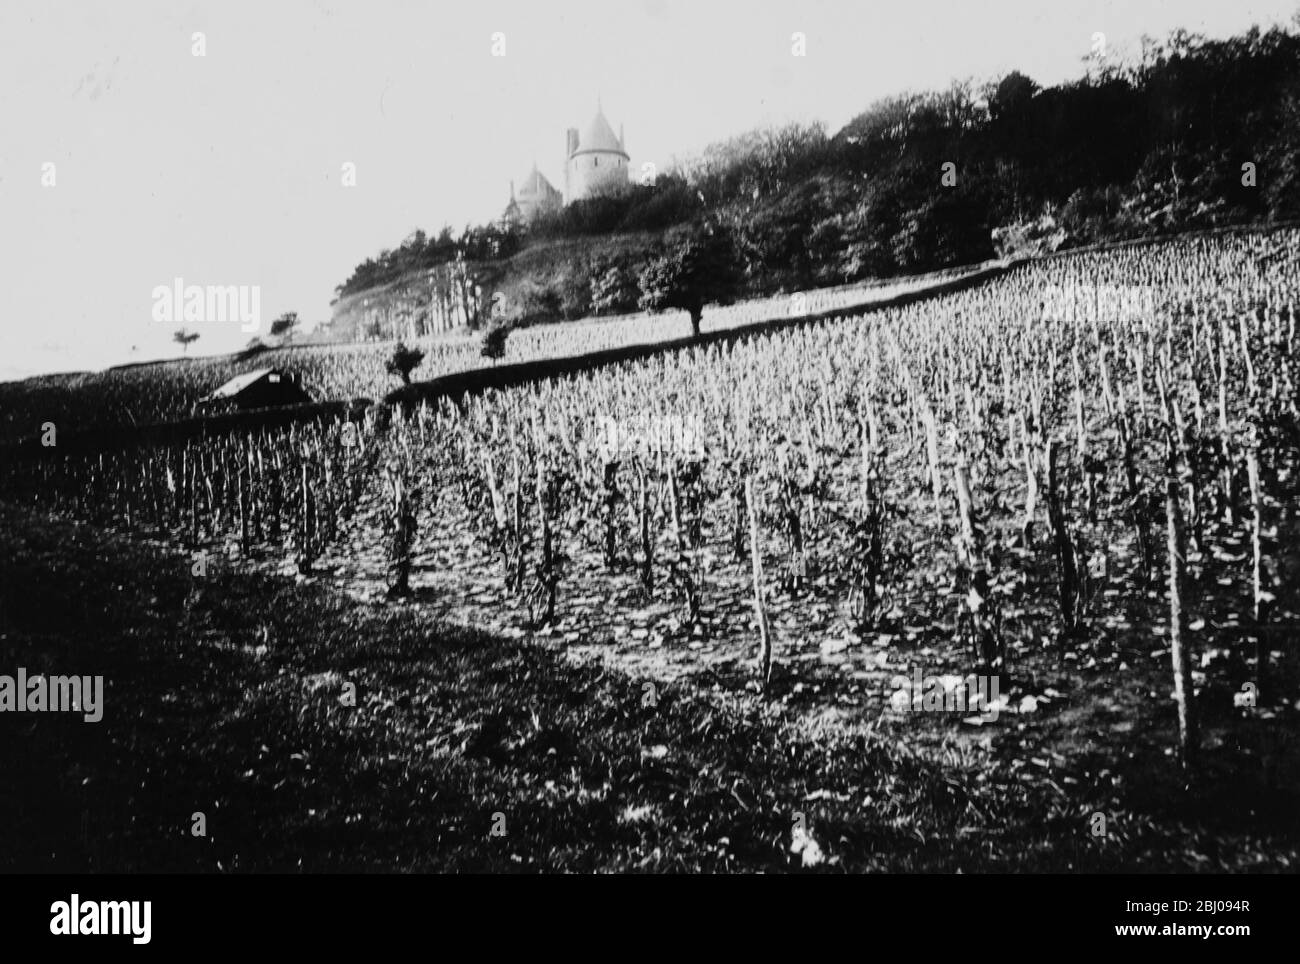 Wine growing at Lord Bute's vineyards at Glamorgan, Wales. Stock Photo